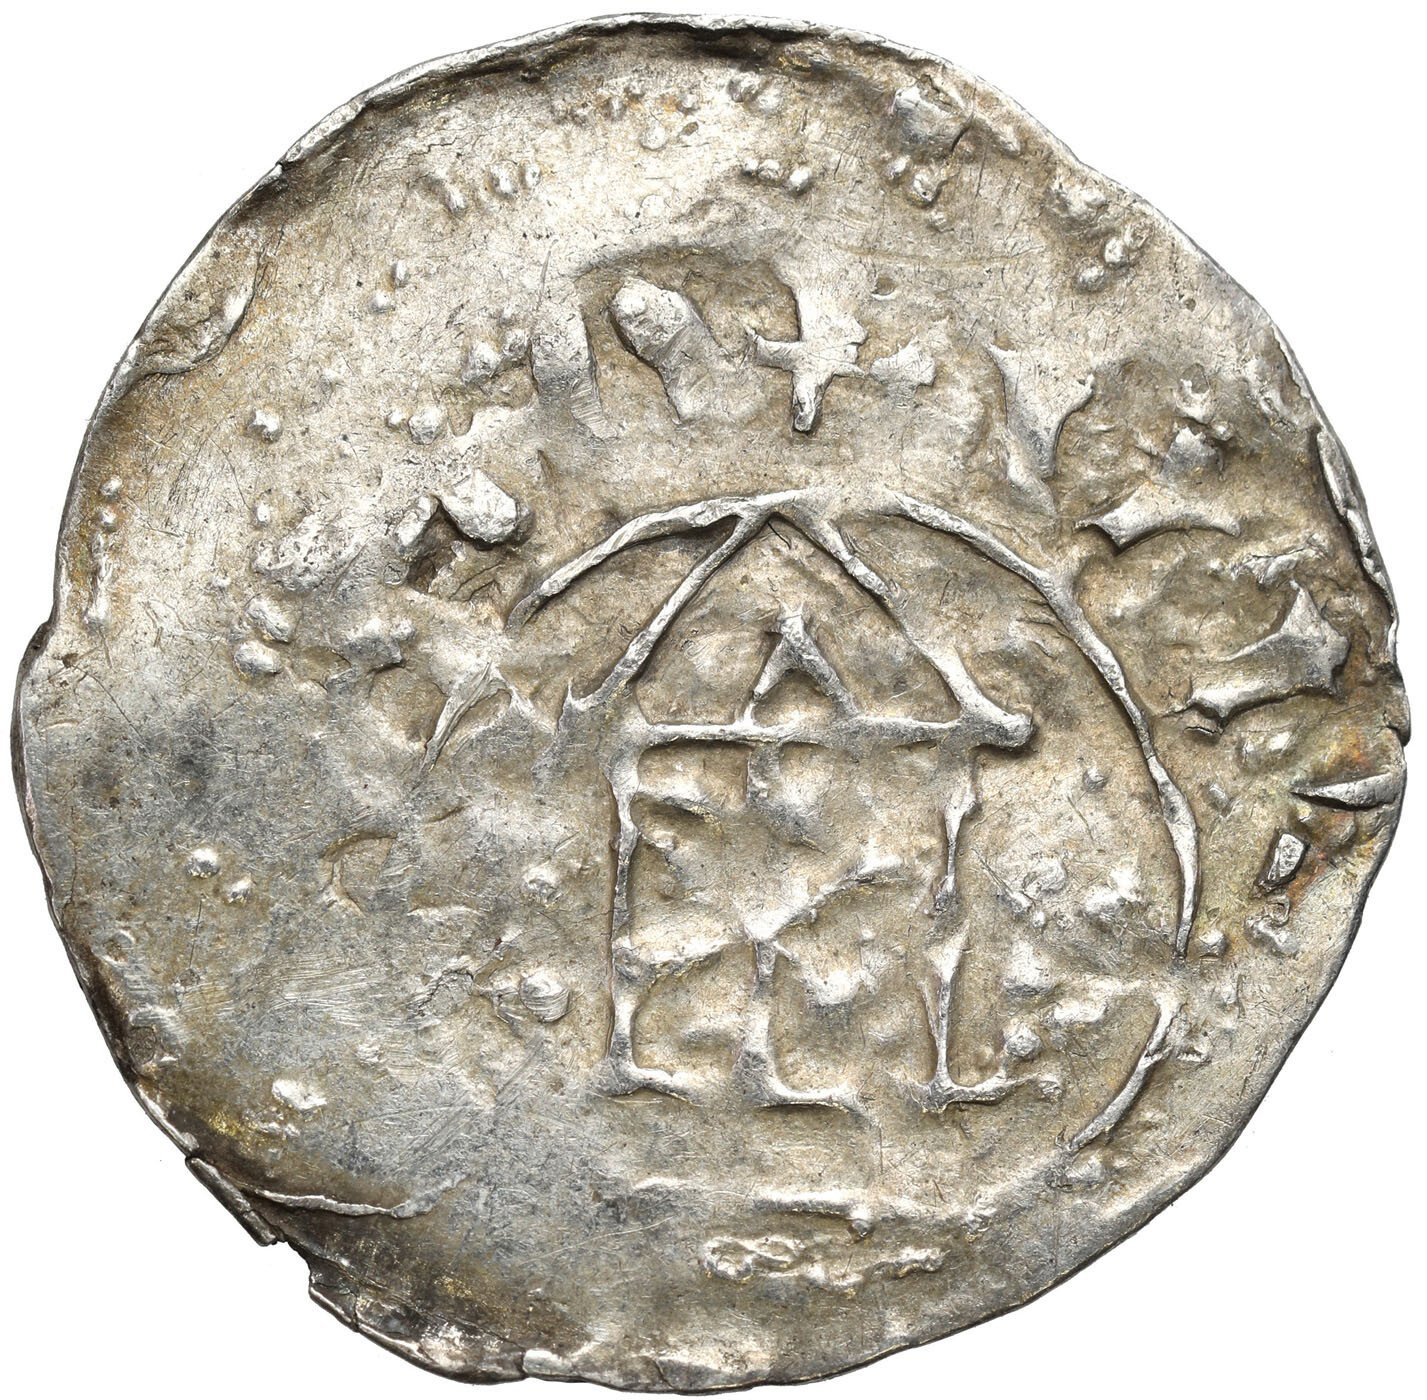 Niemcy, Frankonia - Moguncja. Denar X/XI wiek